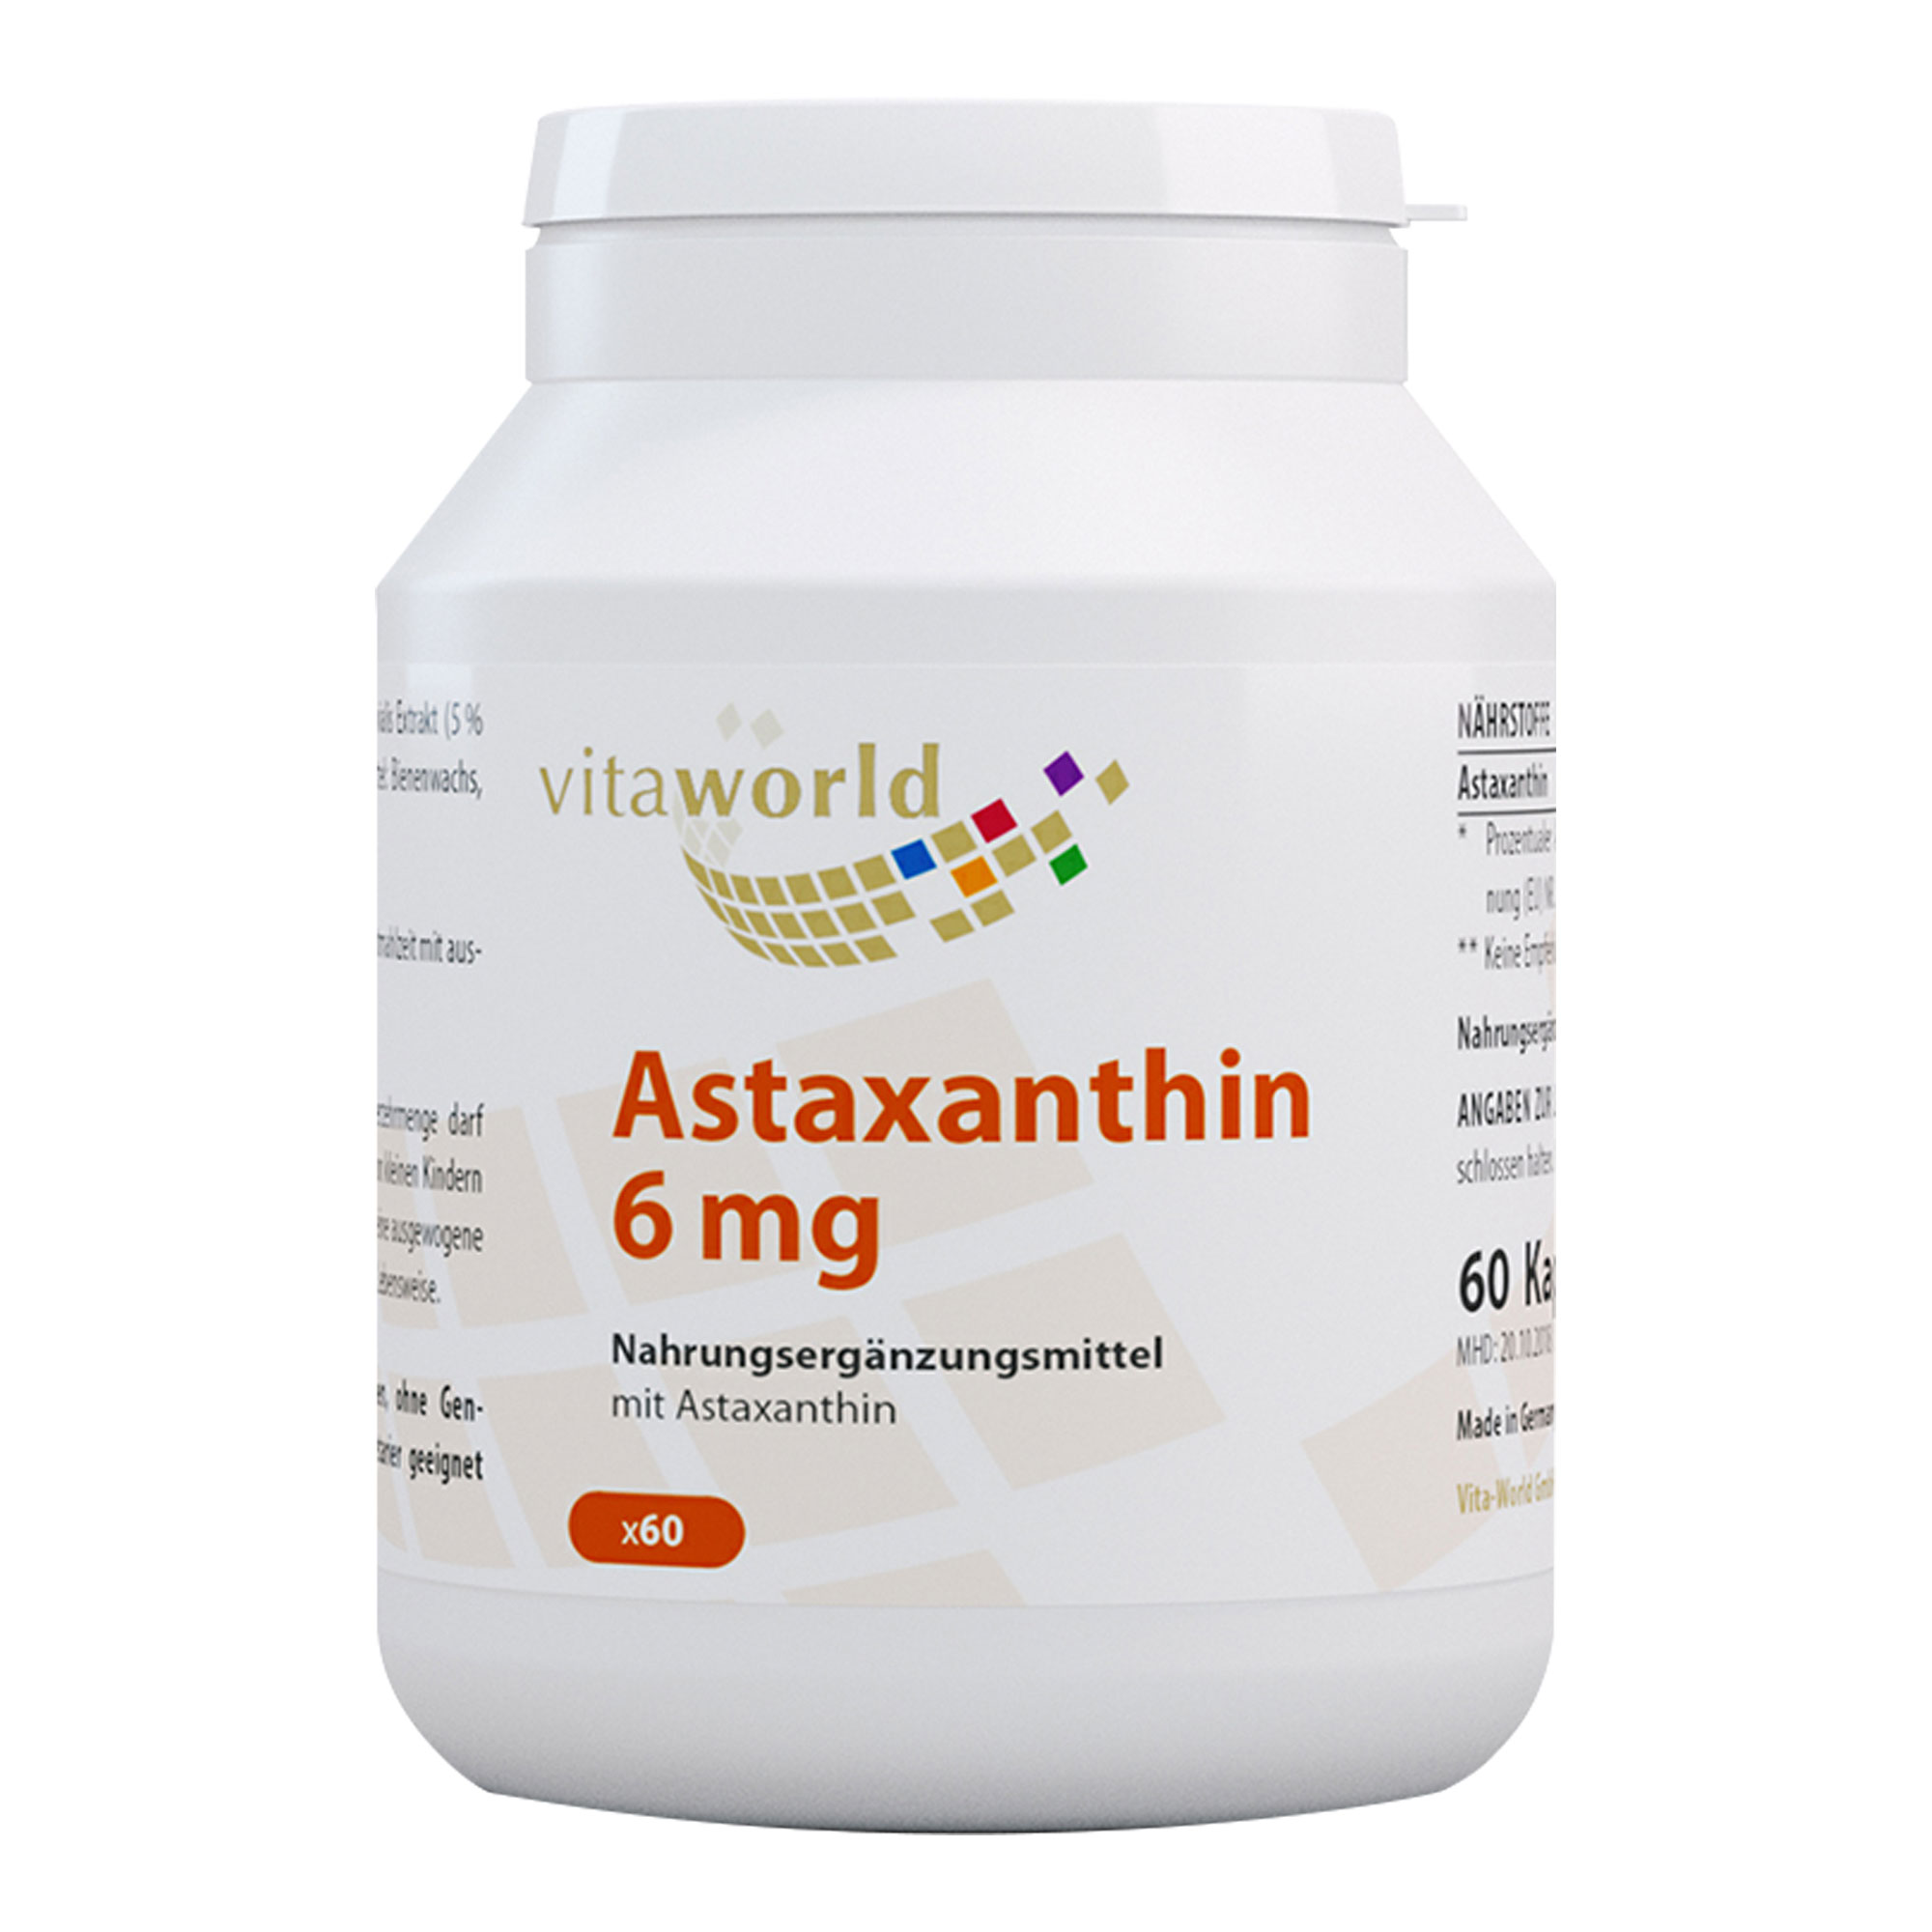 Nahrungsergänzungsmittel mit Astaxanthin.